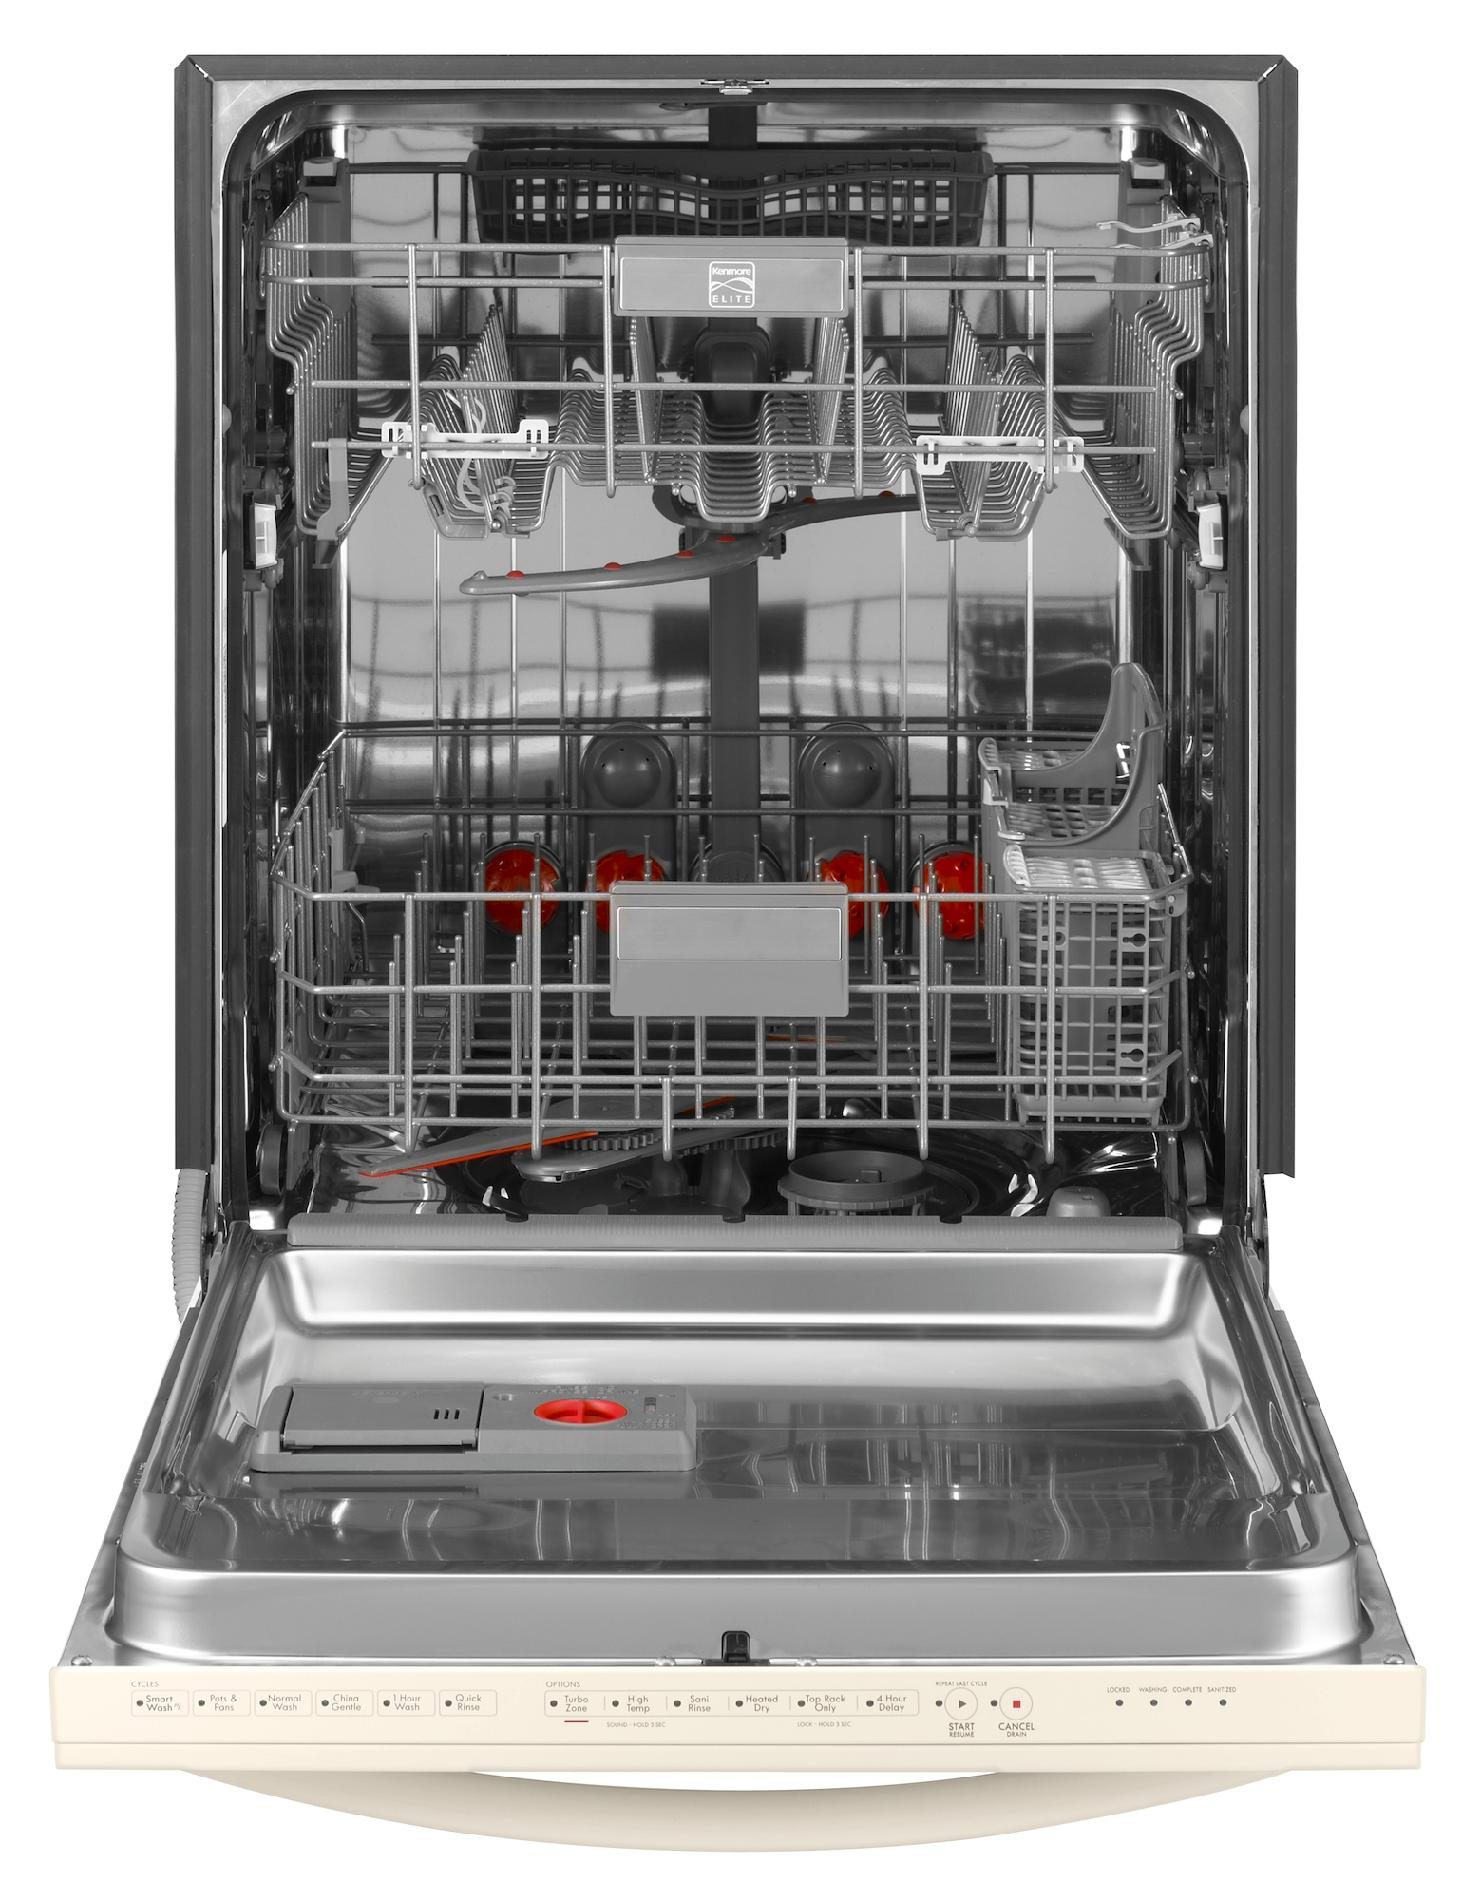 bisque dishwasher